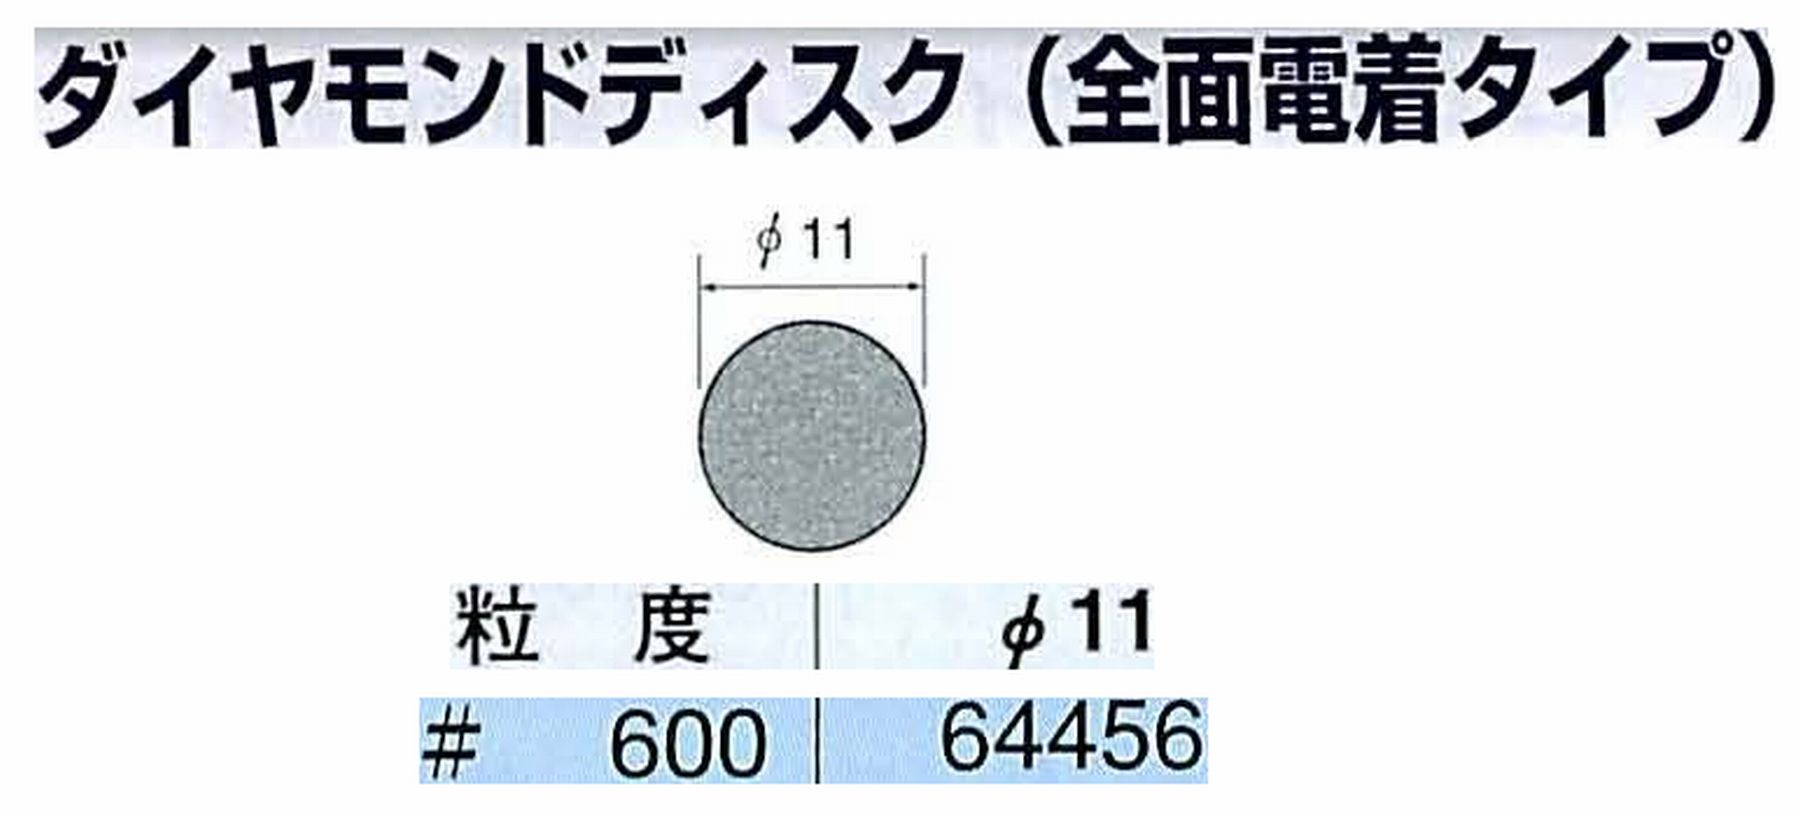 ナカニシ/NAKANISHI アングルグラインダ(電動・エアー) アングルアタッチメント専用工具 ダイヤモンドディスク(全面電着タイプ) 64456